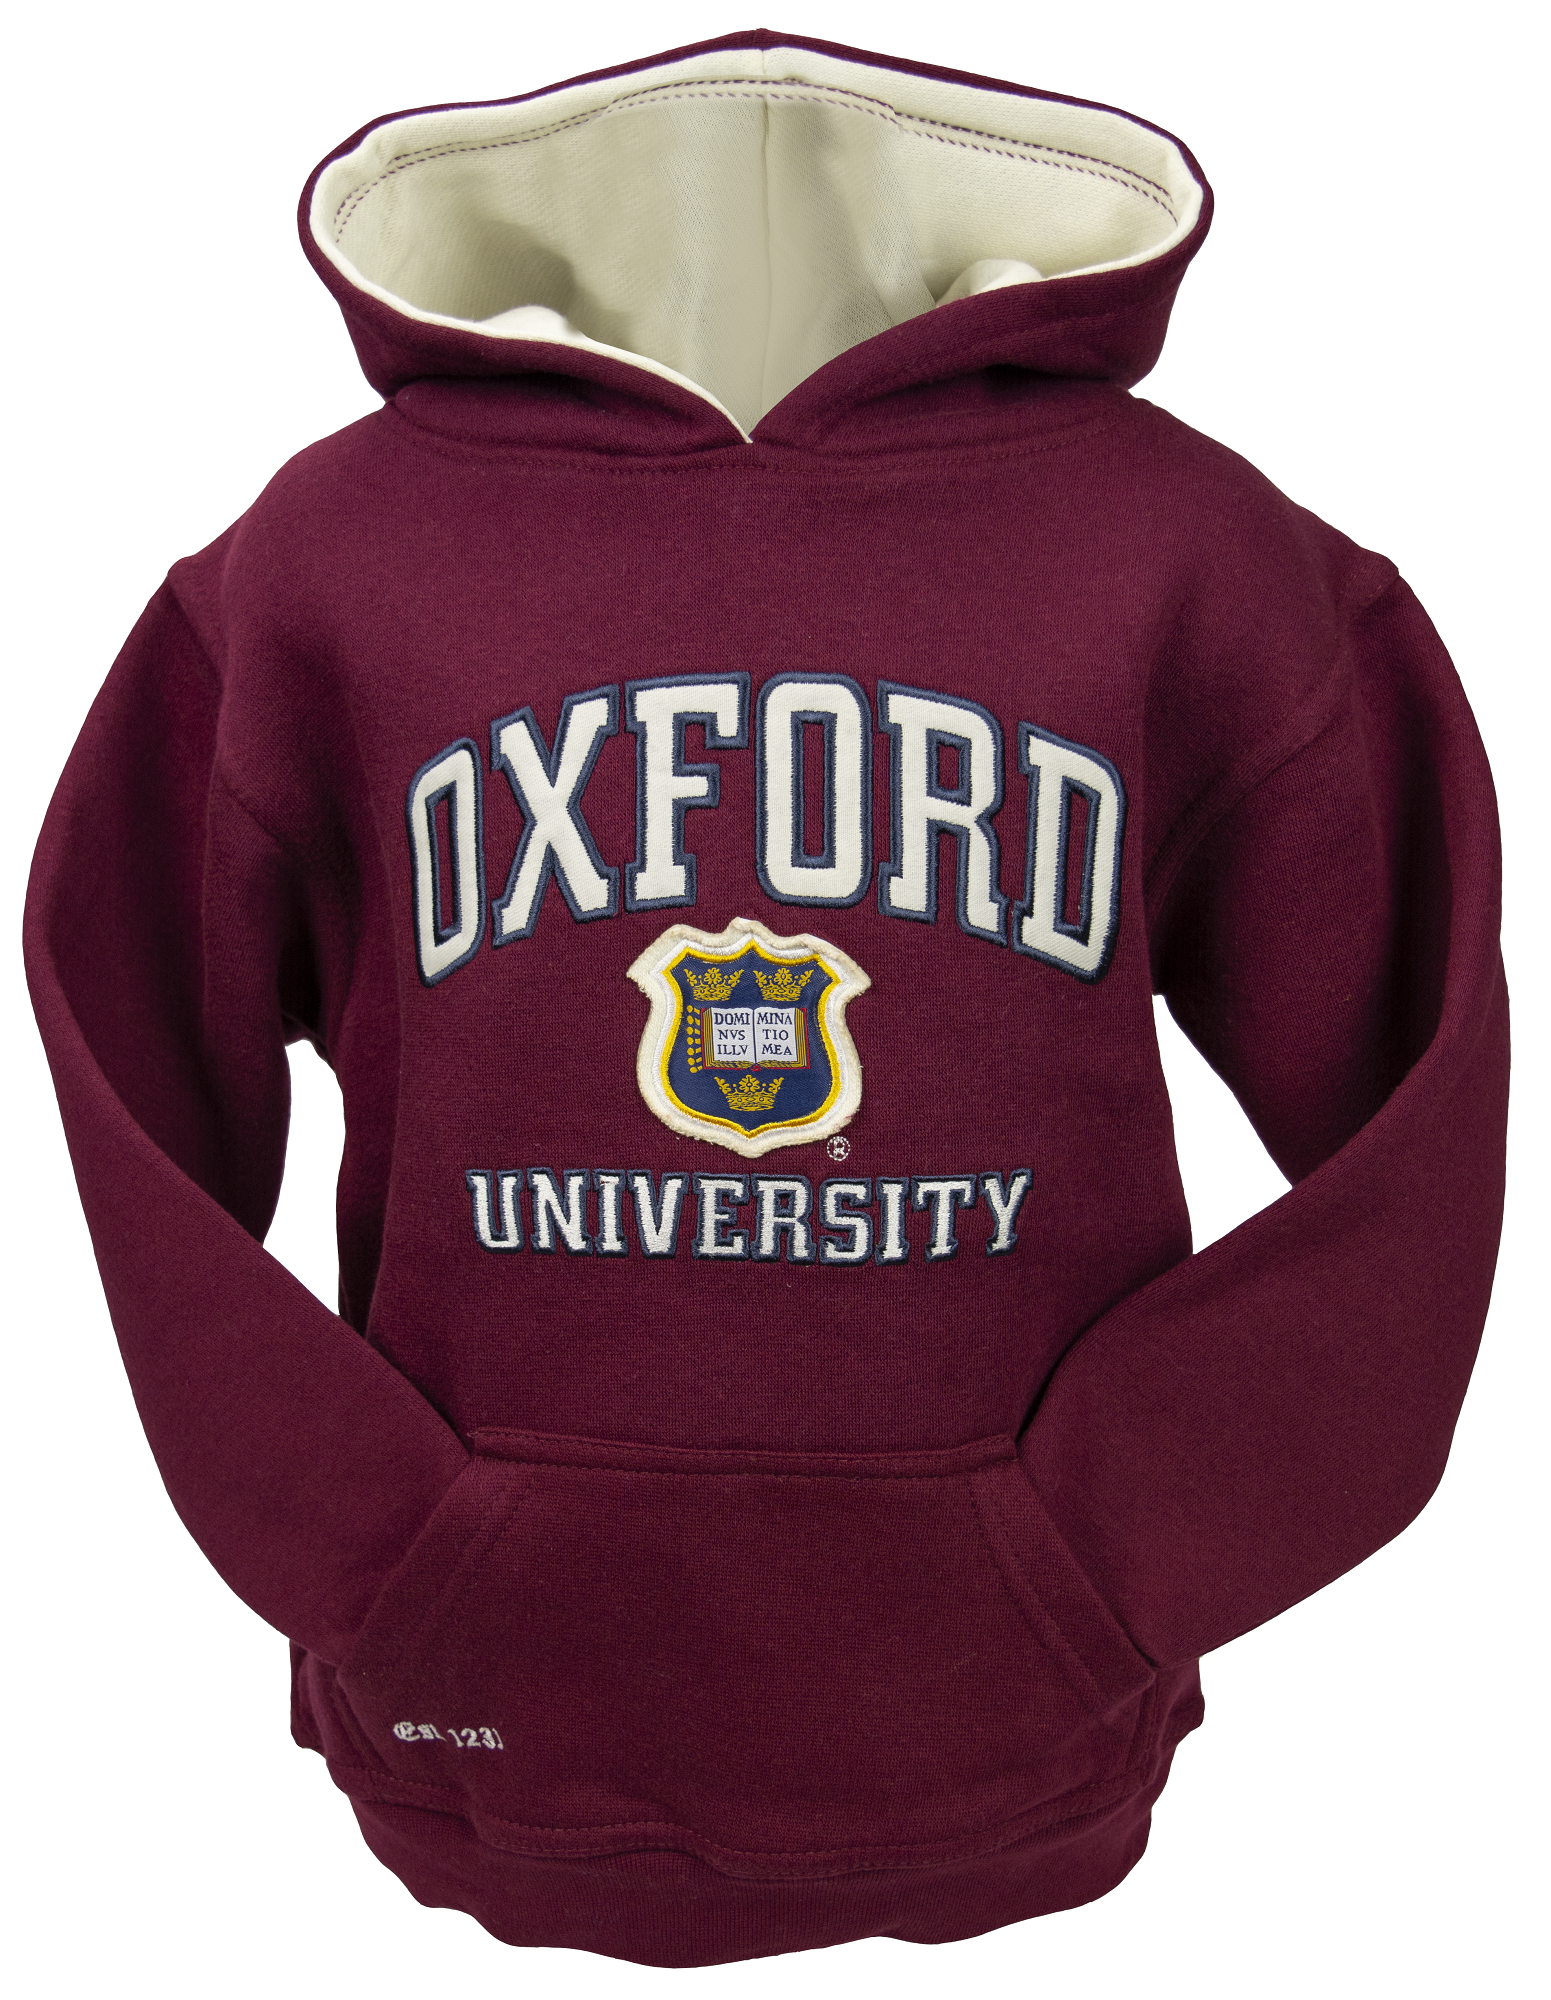 OU129K Kids Licensed Unisex Oxford University Hooded Sweatshirt Maroon - British Heritage Brands